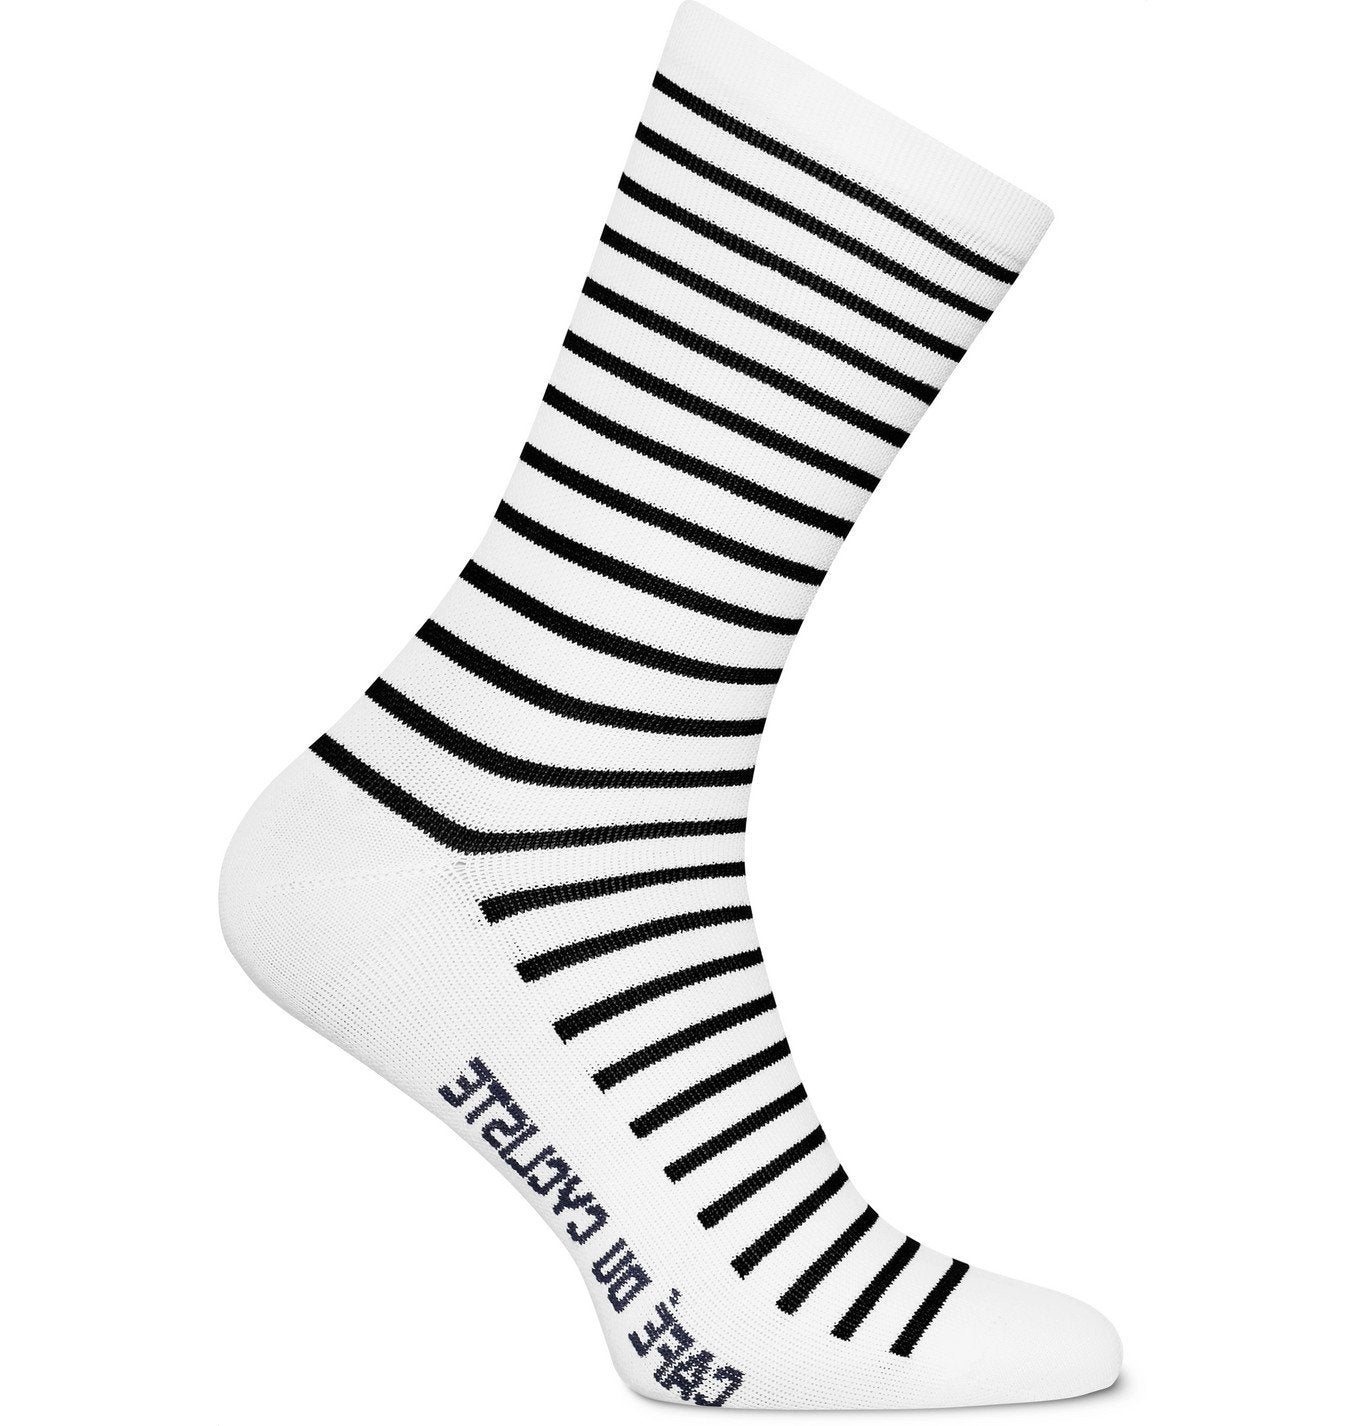 A pair of Cafe du Cycliste striped breton socks